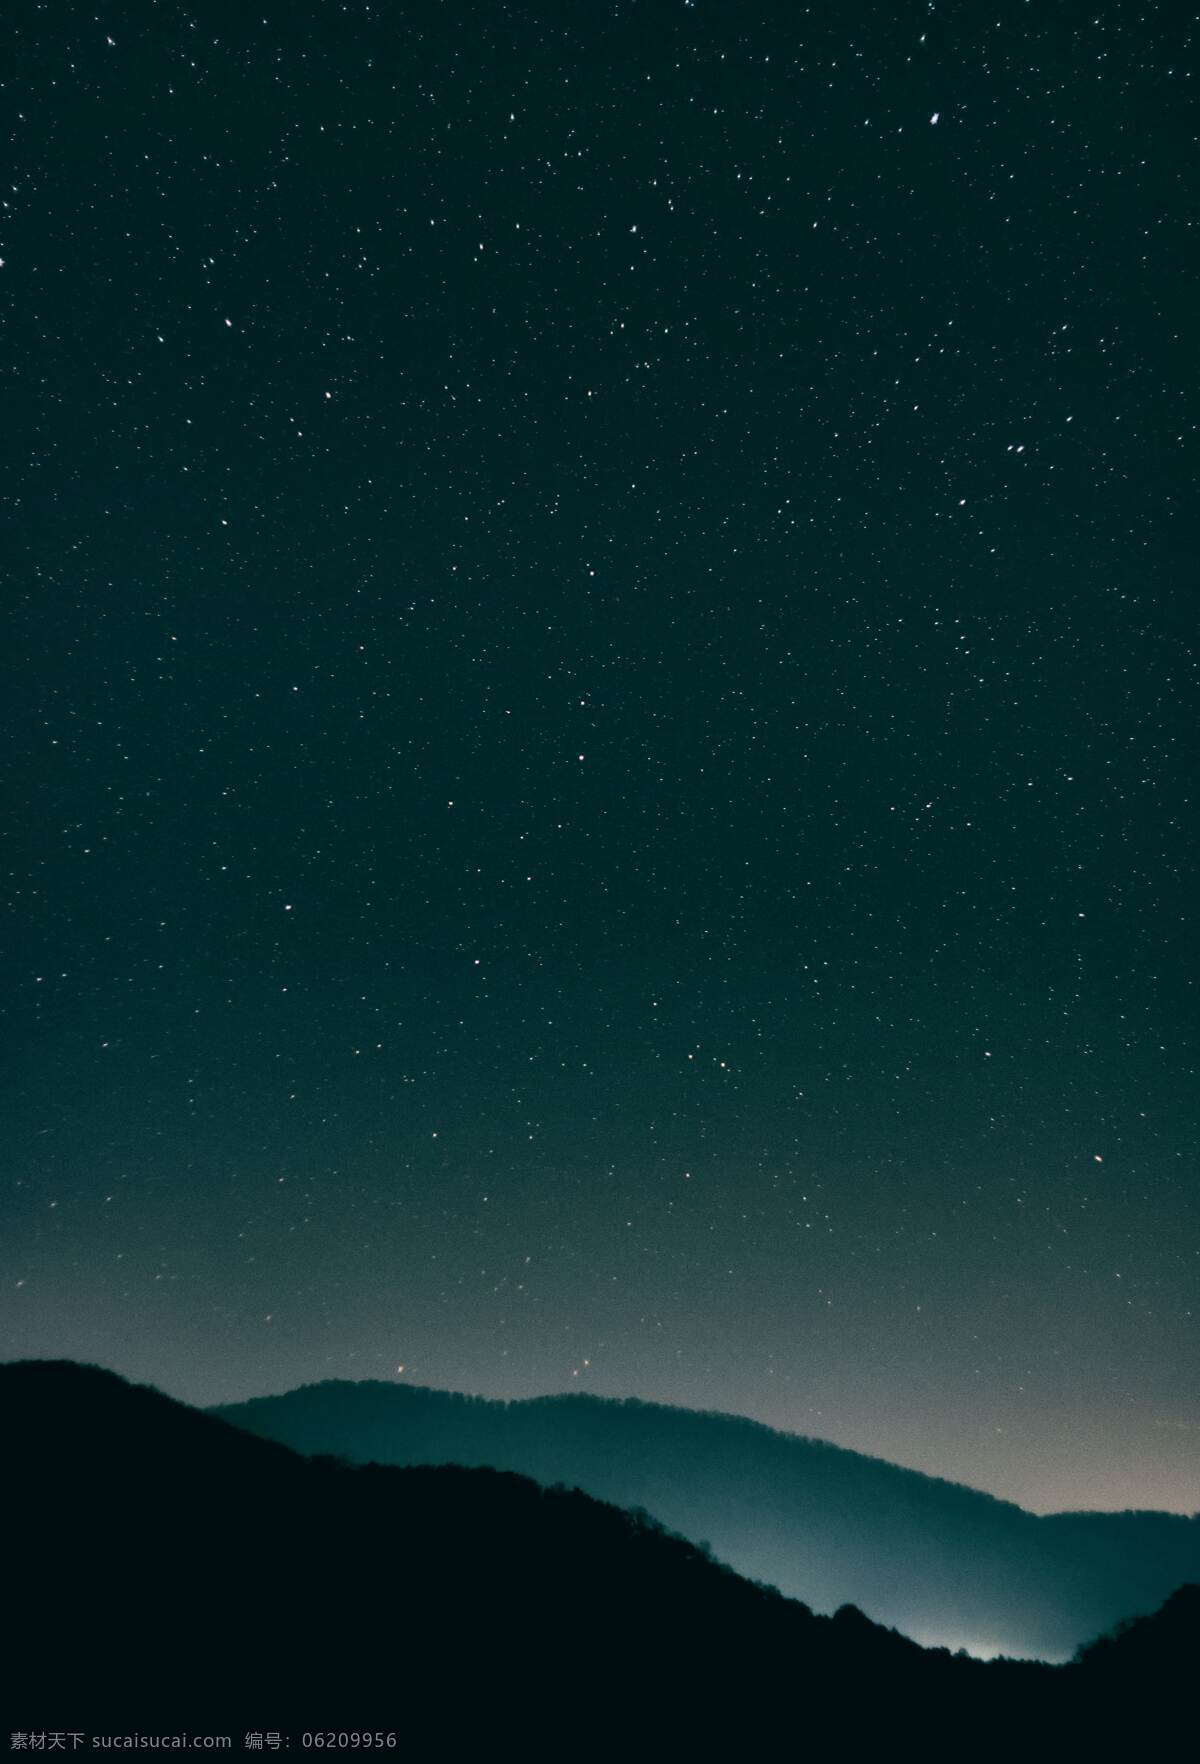 星空 星星 远山 夜晚 夜空 摄影图 壁纸 背景图片 海报背景 高清素材 自然景观 自然风景